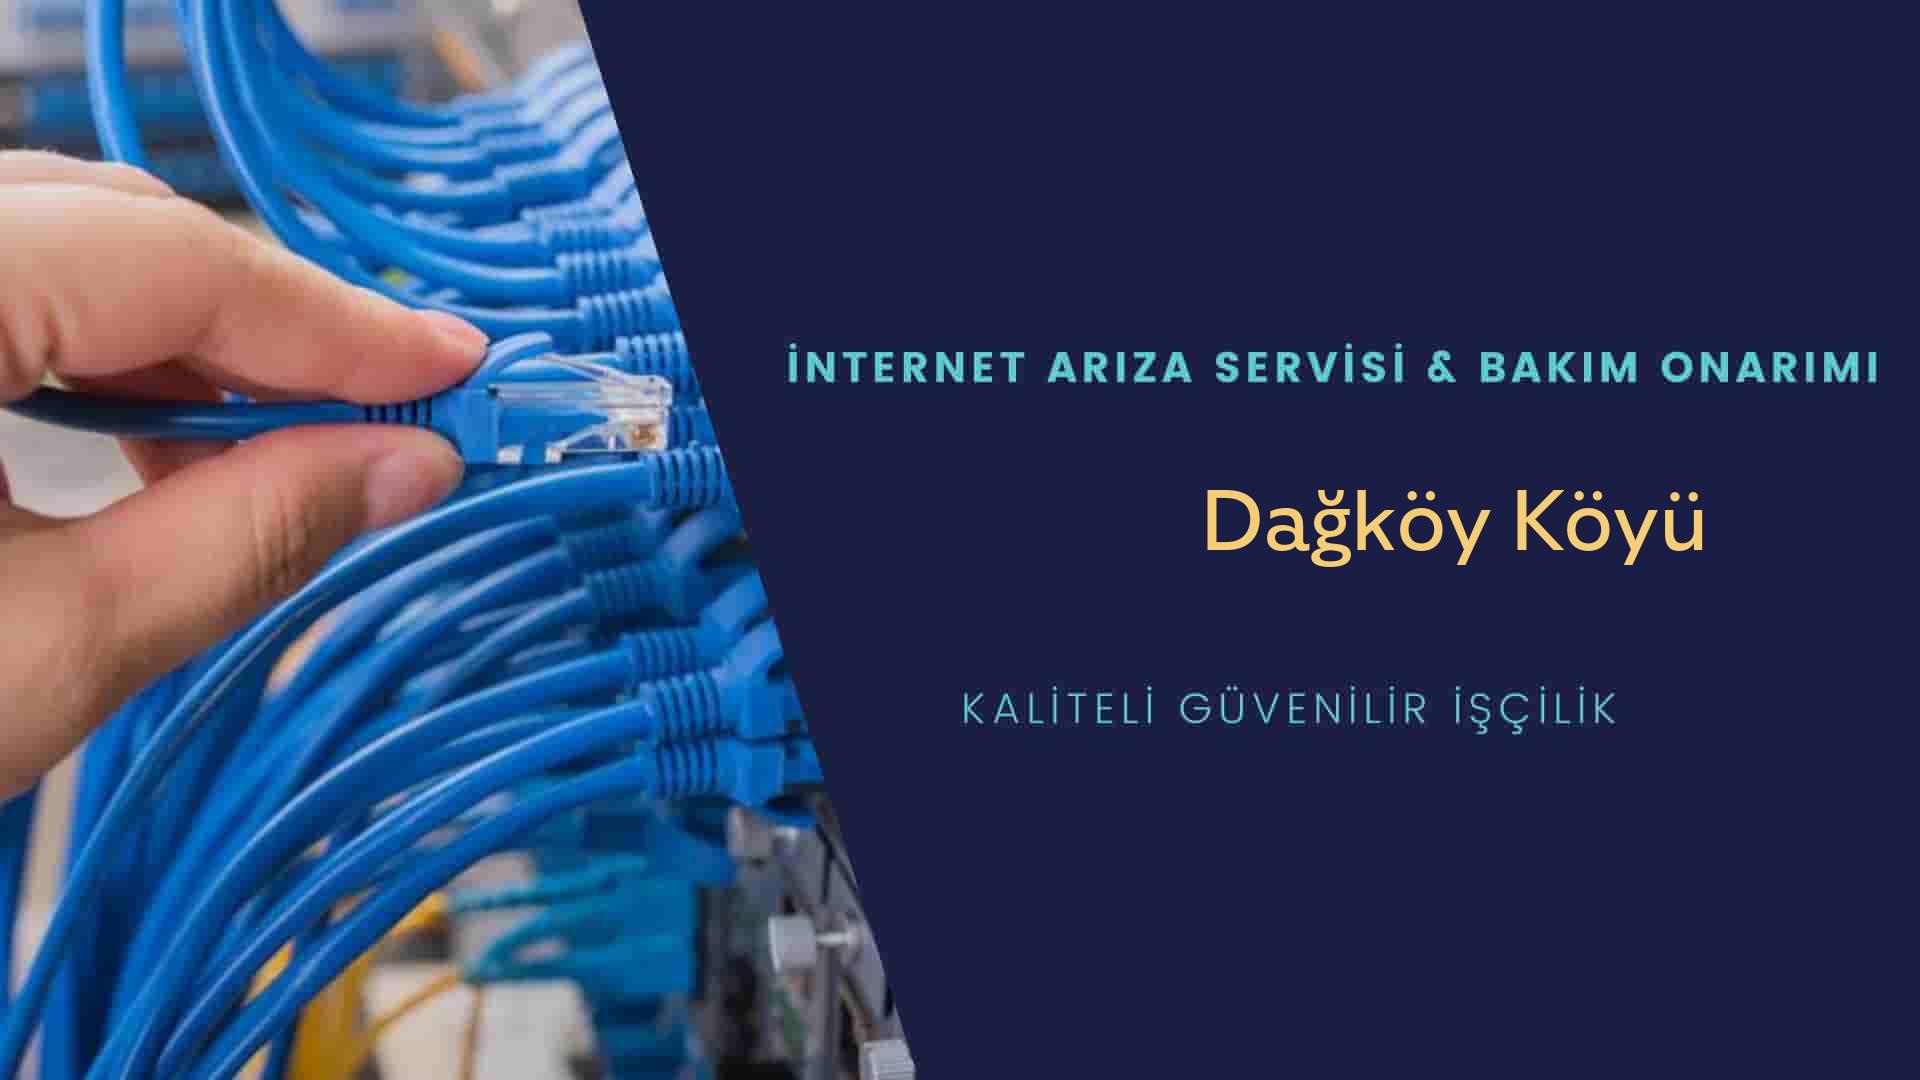 Dağköy Köyü internet kablosu çekimi yapan yerler veya elektrikçiler mi? arıyorsunuz doğru yerdesiniz o zaman sizlere 7/24 yardımcı olacak profesyonel ustalarımız bir telefon kadar yakındır size.